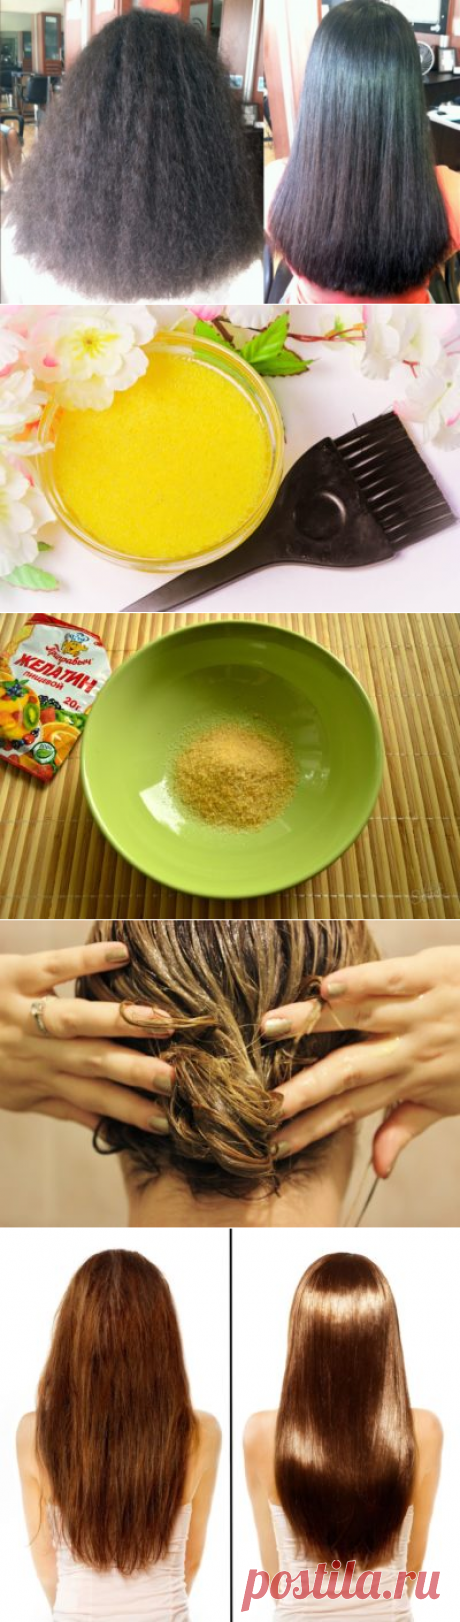 Желатиновая маска для волос невероятный эффект, фото до и после